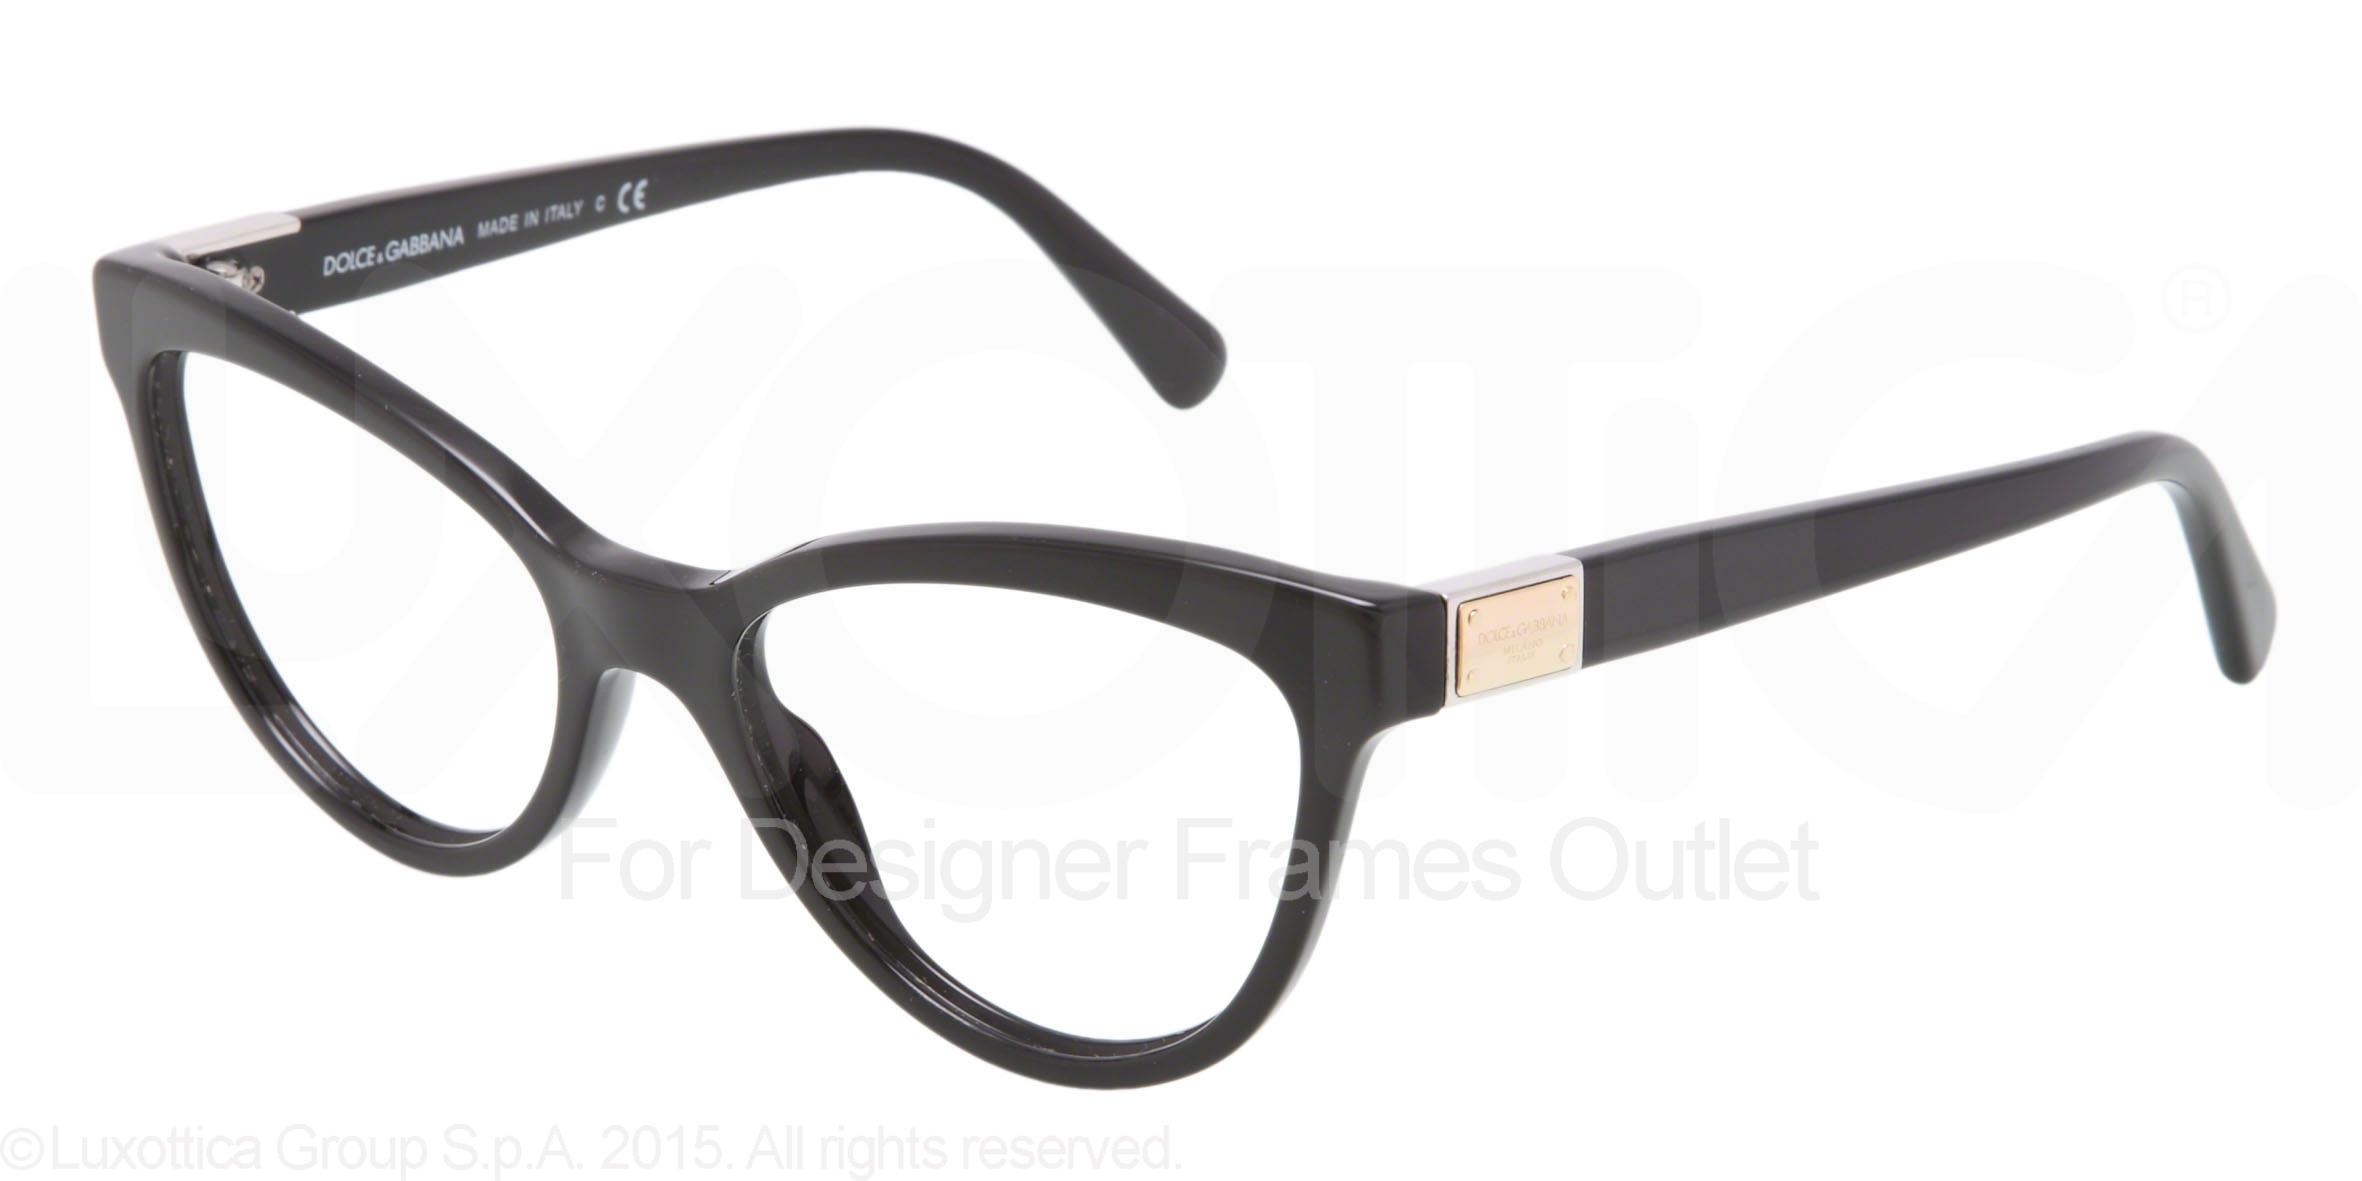 Designer Frames Outlet. Dolce & Gabbana Eyeglasses DG3169